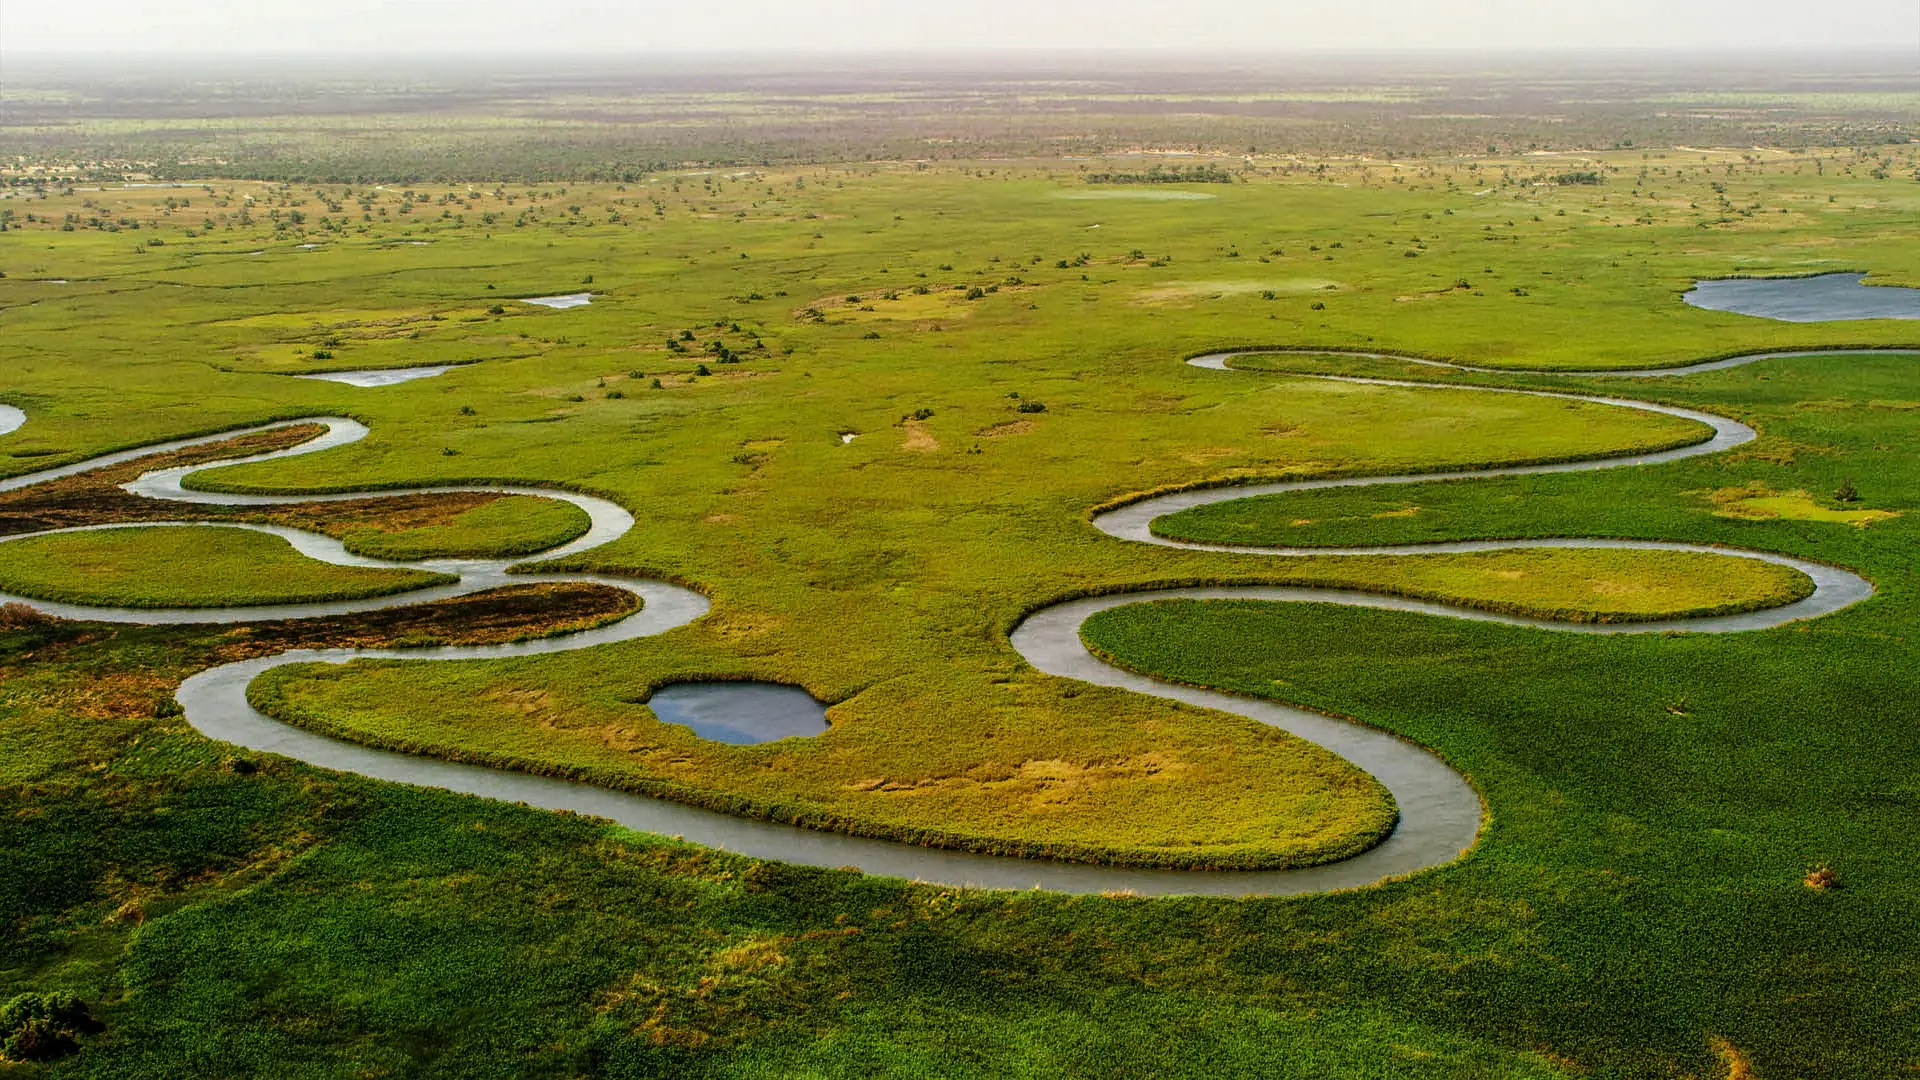 Okavango Delta Explorer safari